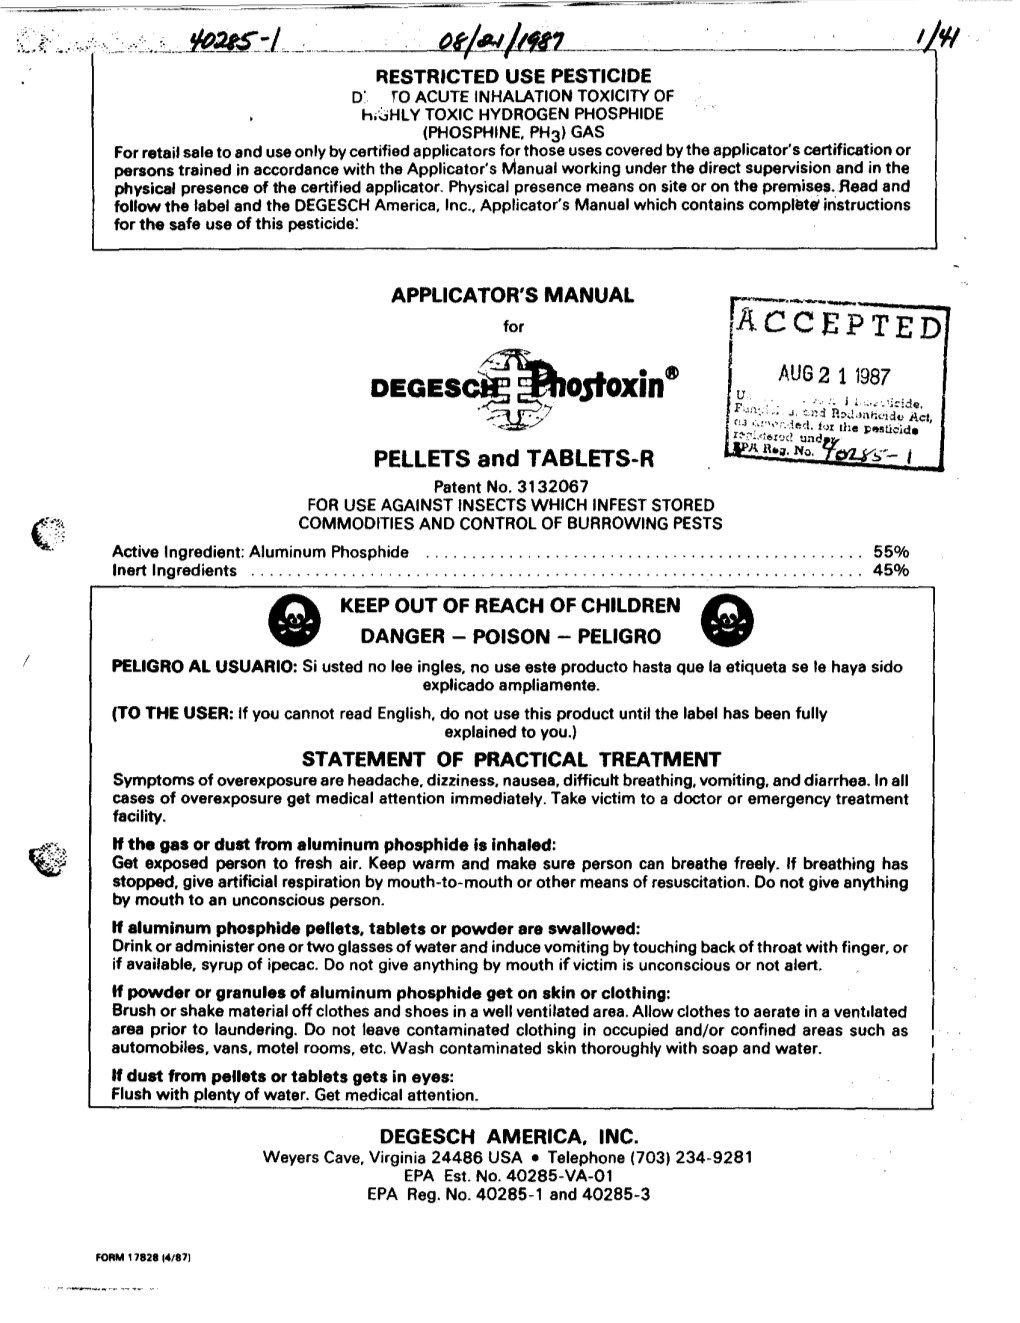 U.S. EPA, Pesticide Product Label, , 08/21/1987